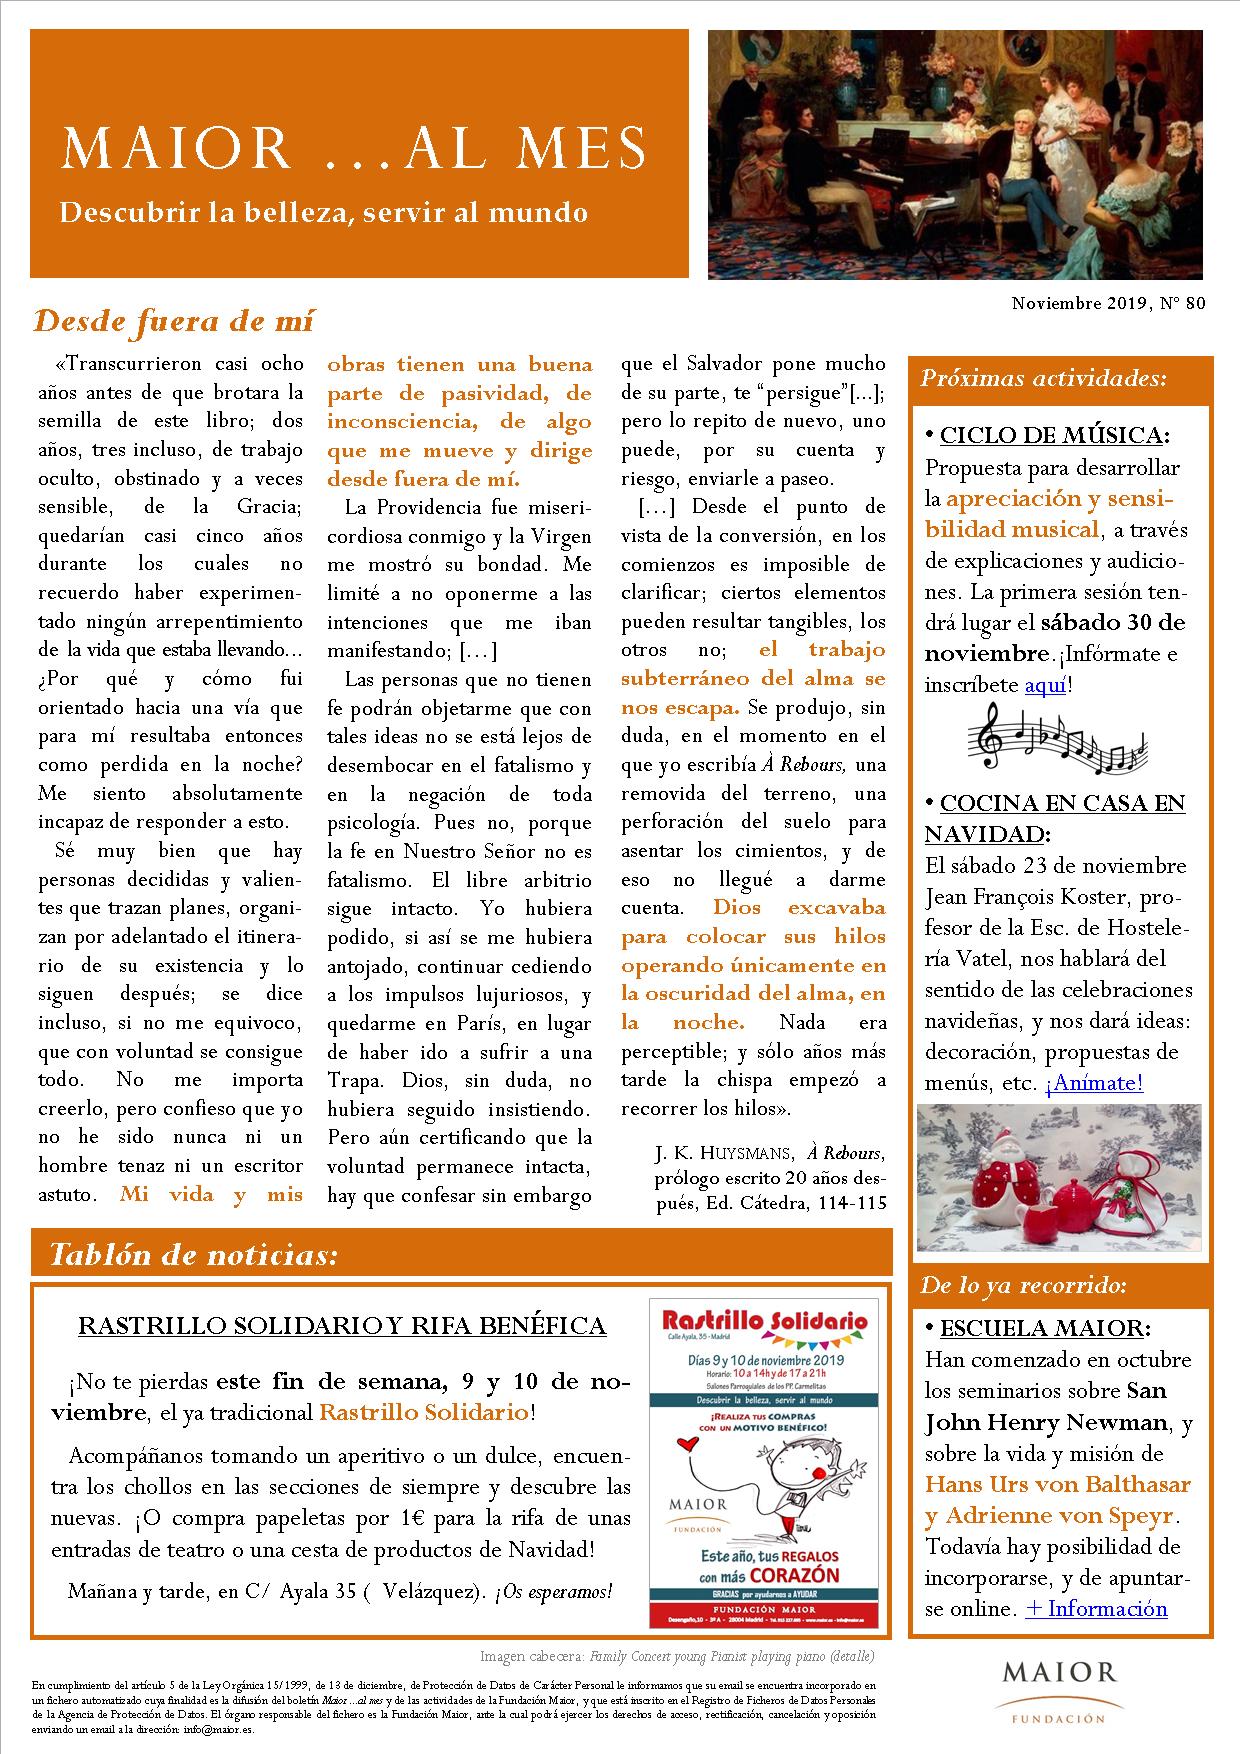 Boletín mensual de noticias y actividades de la Fundación Maior. Edición de noviembre 2019